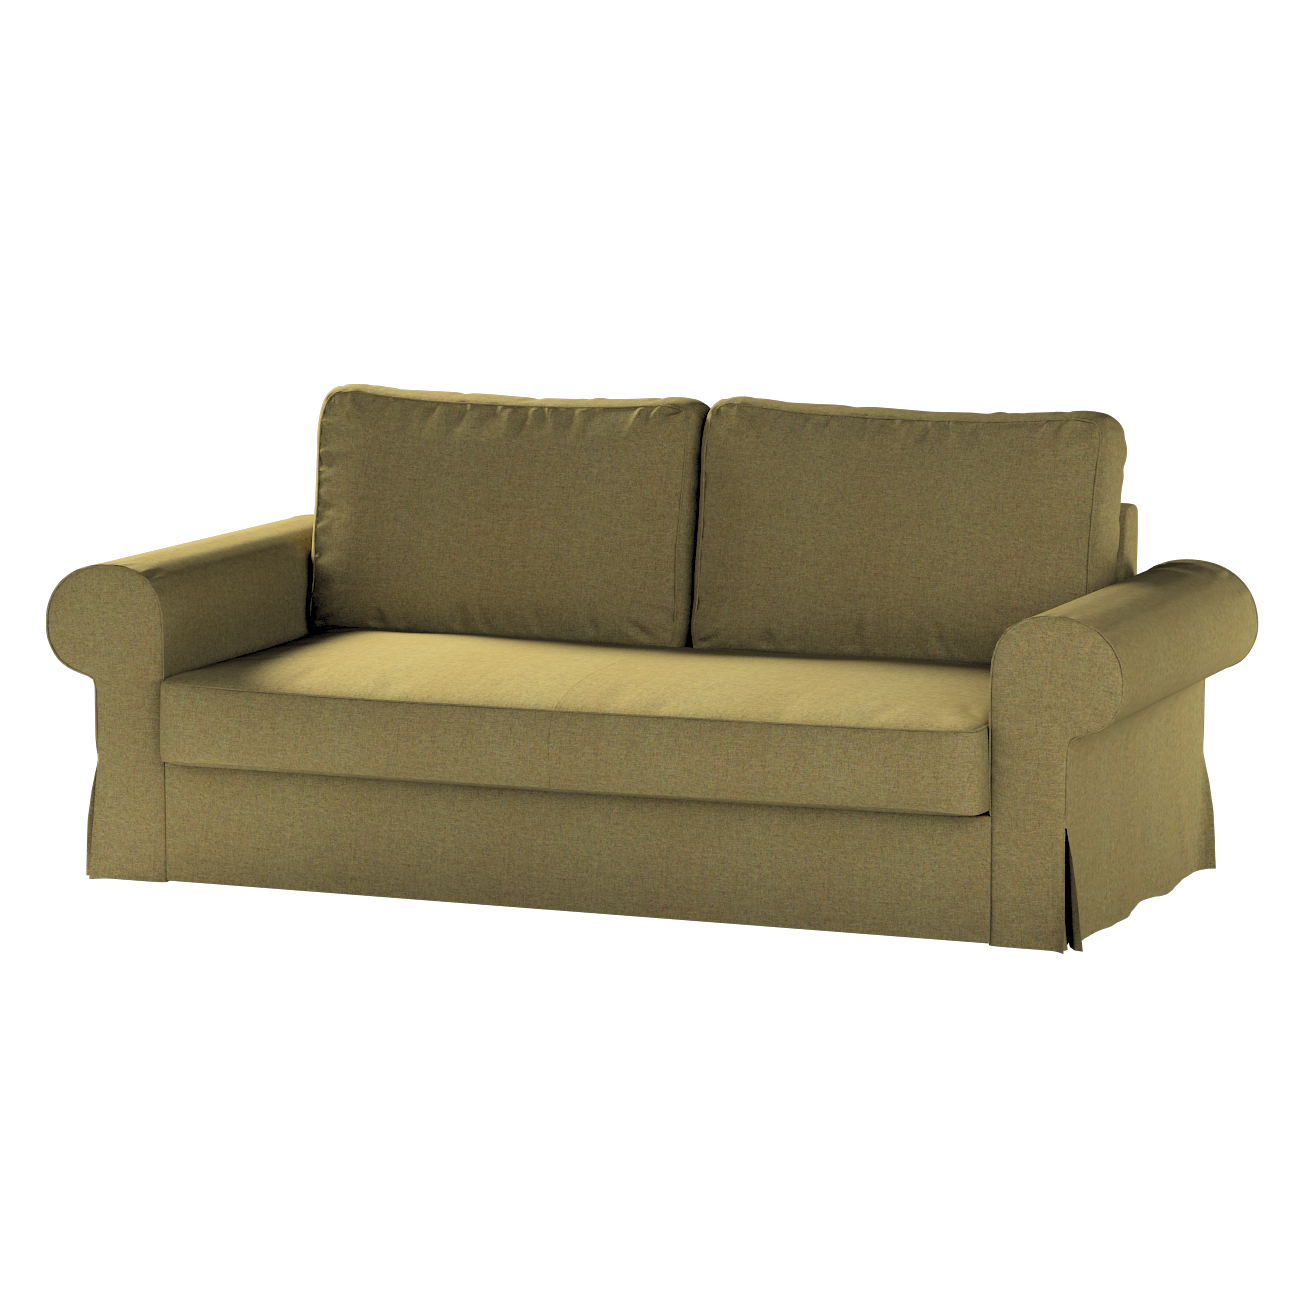 Bezug für Backabro 3-Sitzer Sofa ausklappbar, olivgrün, Bezug für Backabro günstig online kaufen